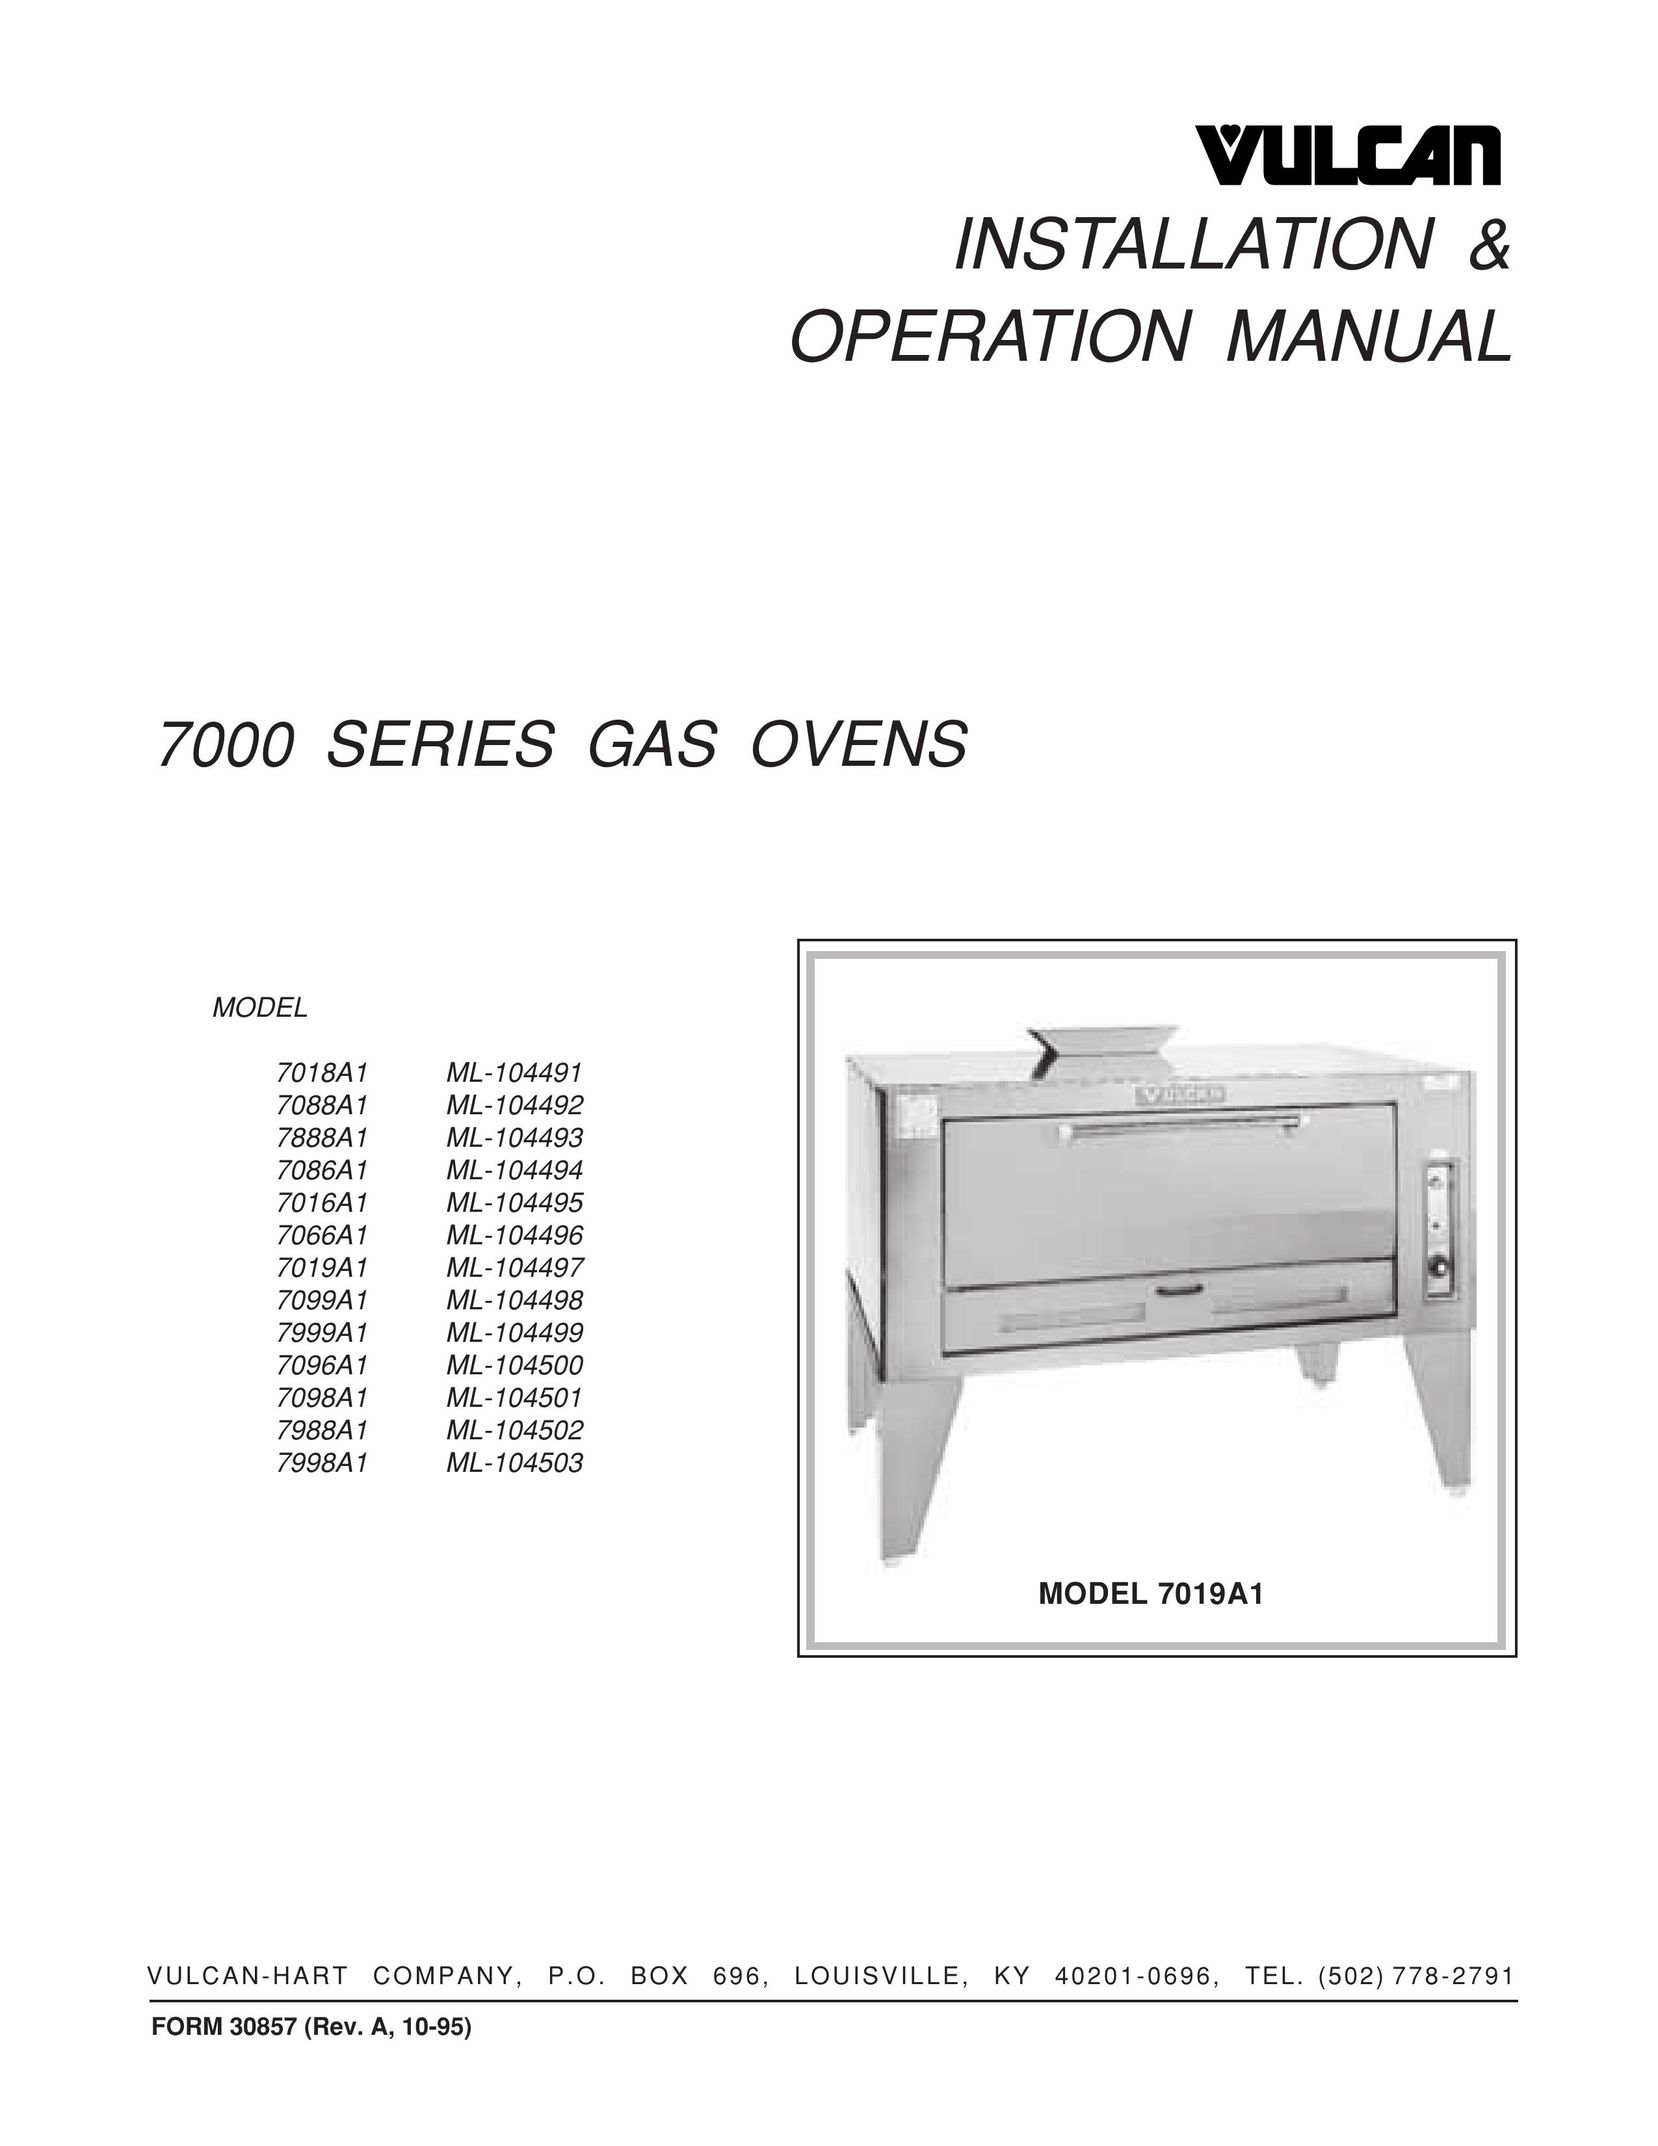 Vulcan-Hart 7066A1 ML-104496 Oven User Manual